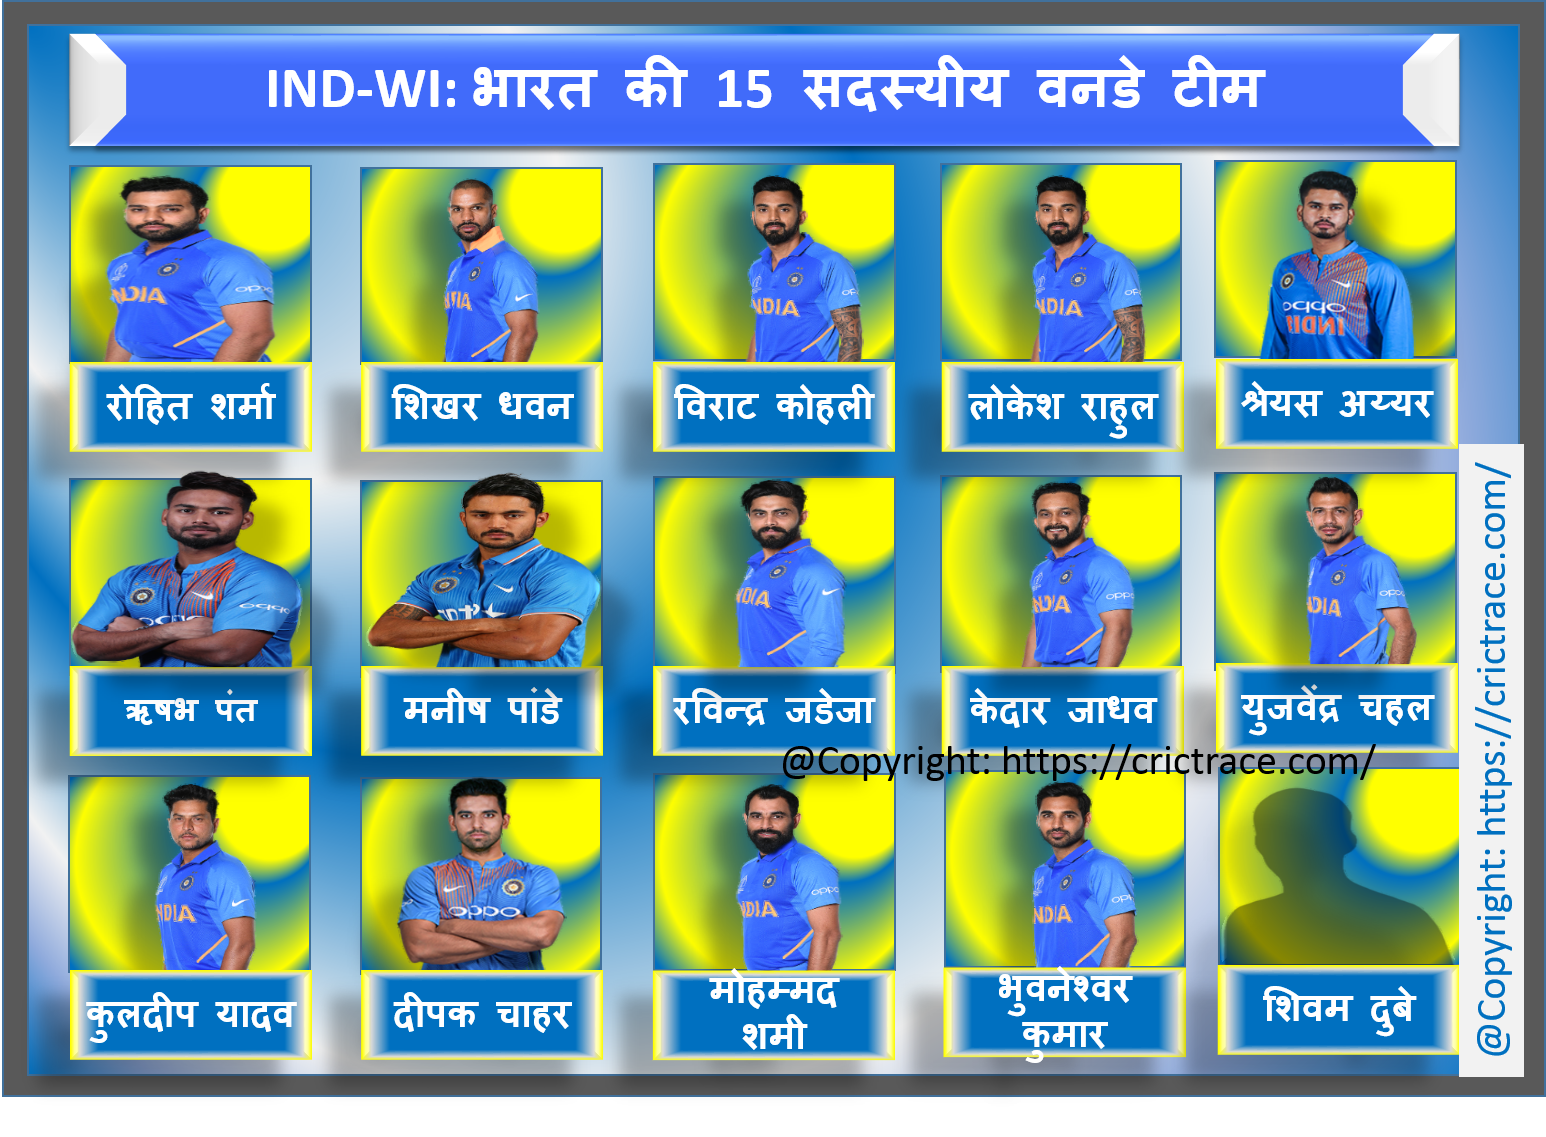 IND vs WI ODI